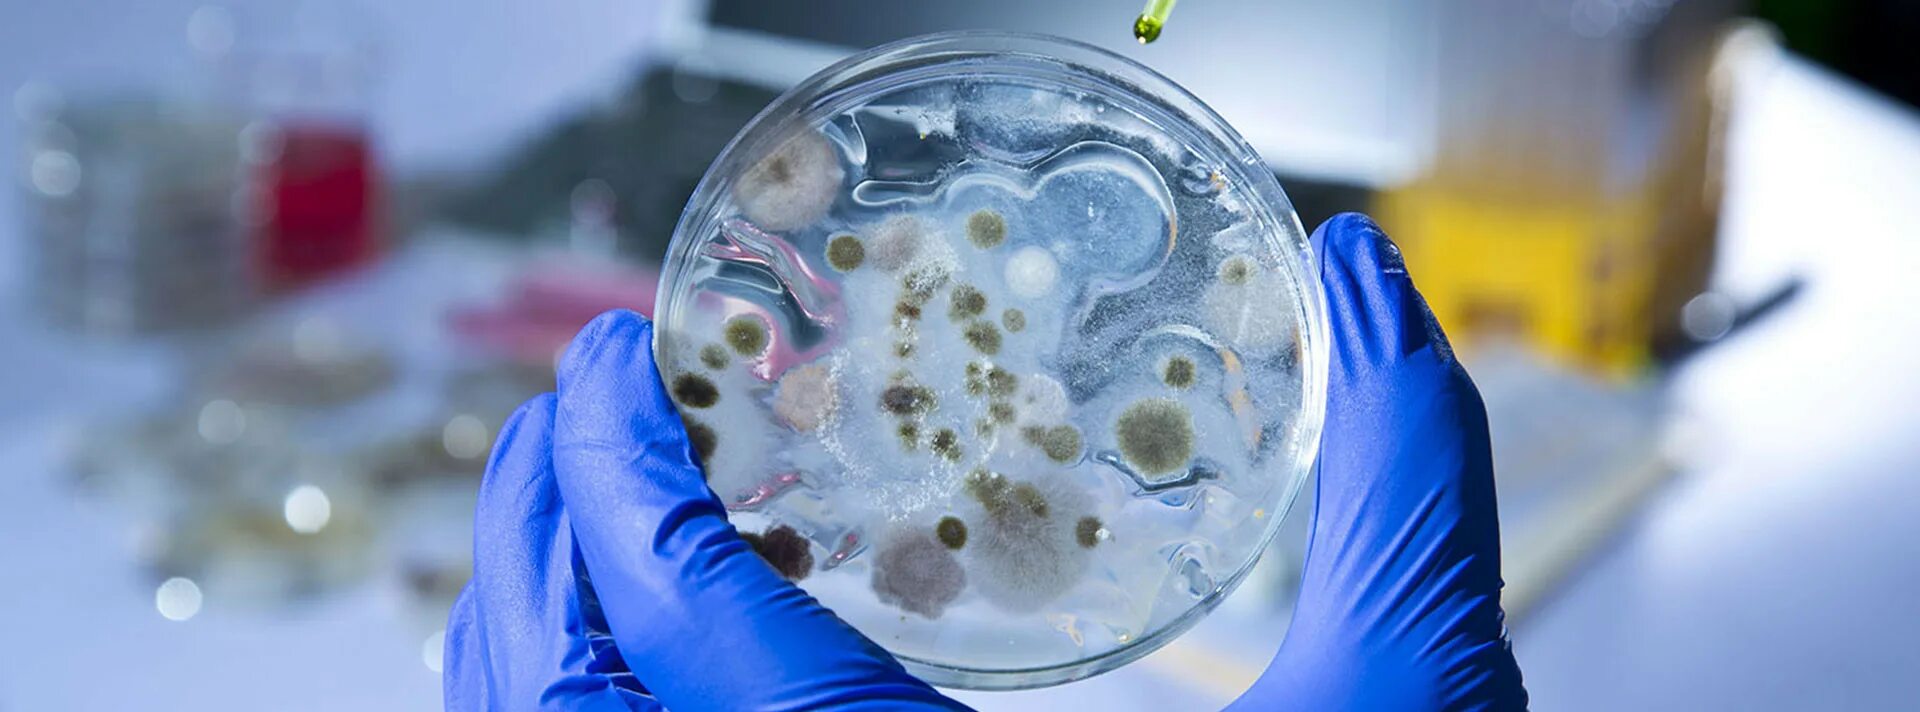 Биотехнология чашки Петри с микроорганизмами. Биотехнология микроорганизмов. Микроорганизмы в пробирках. Микробная биотехнология.